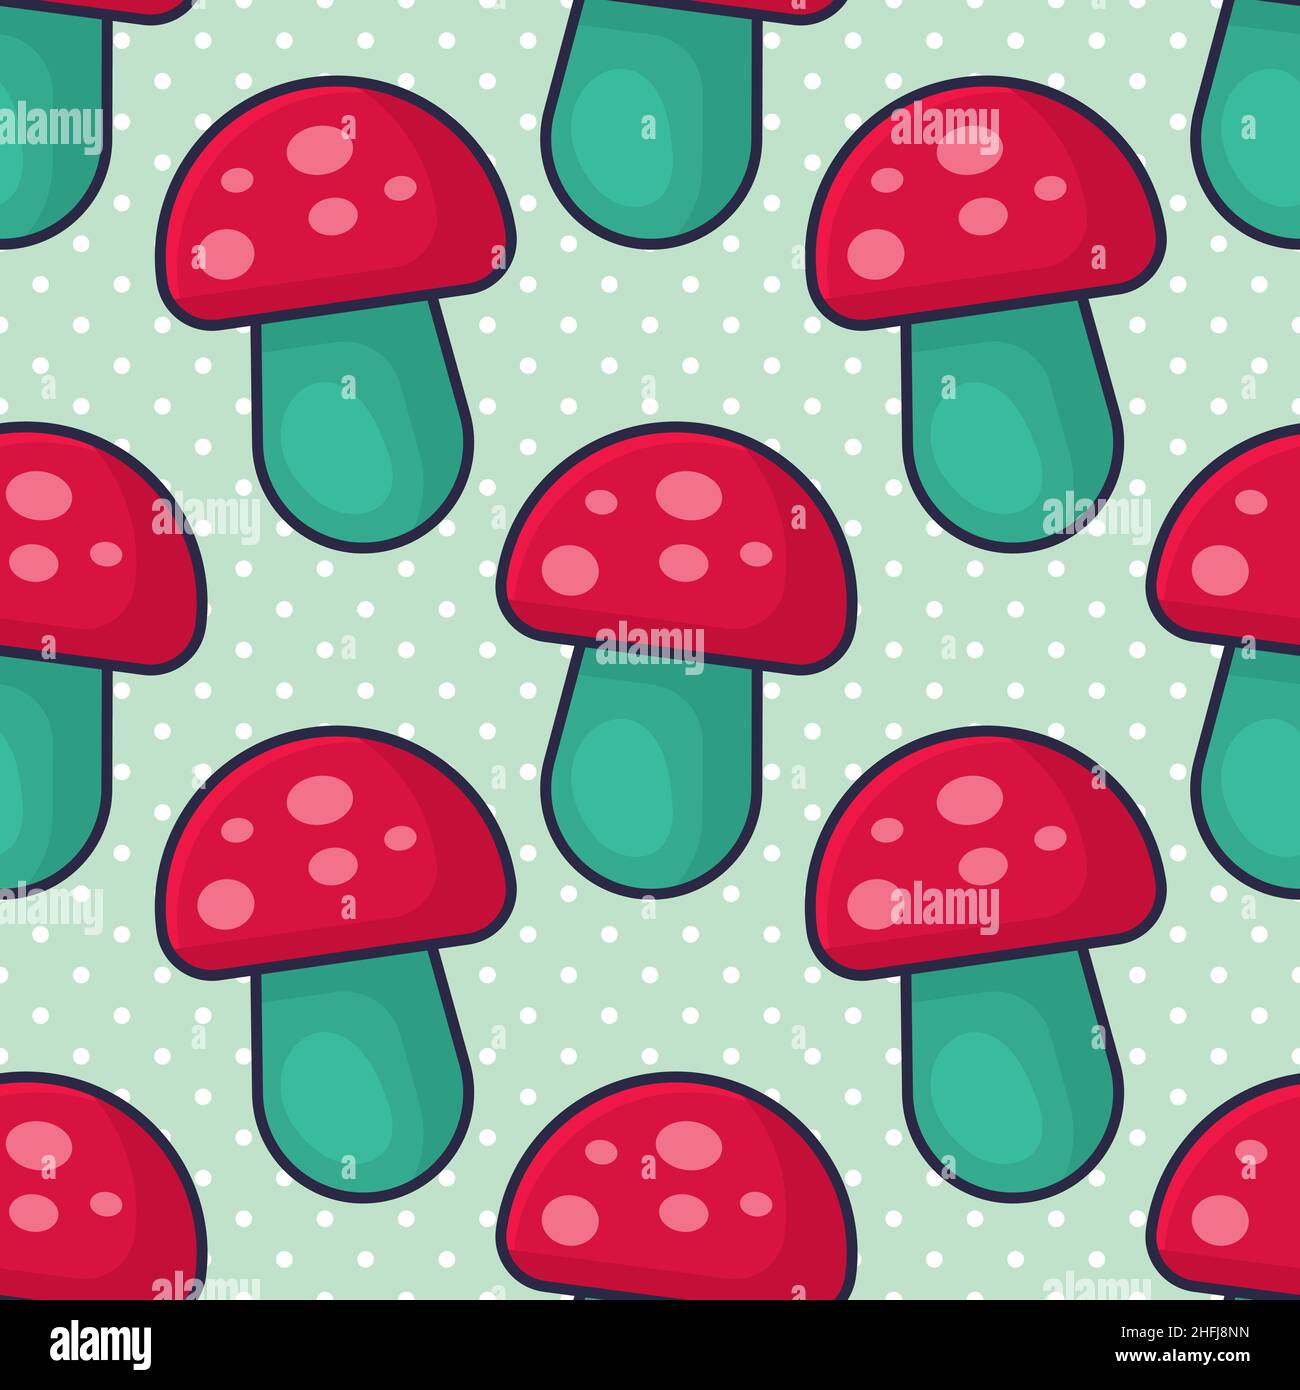 Mushrooms seamless pattern vector illustration Stock Vector